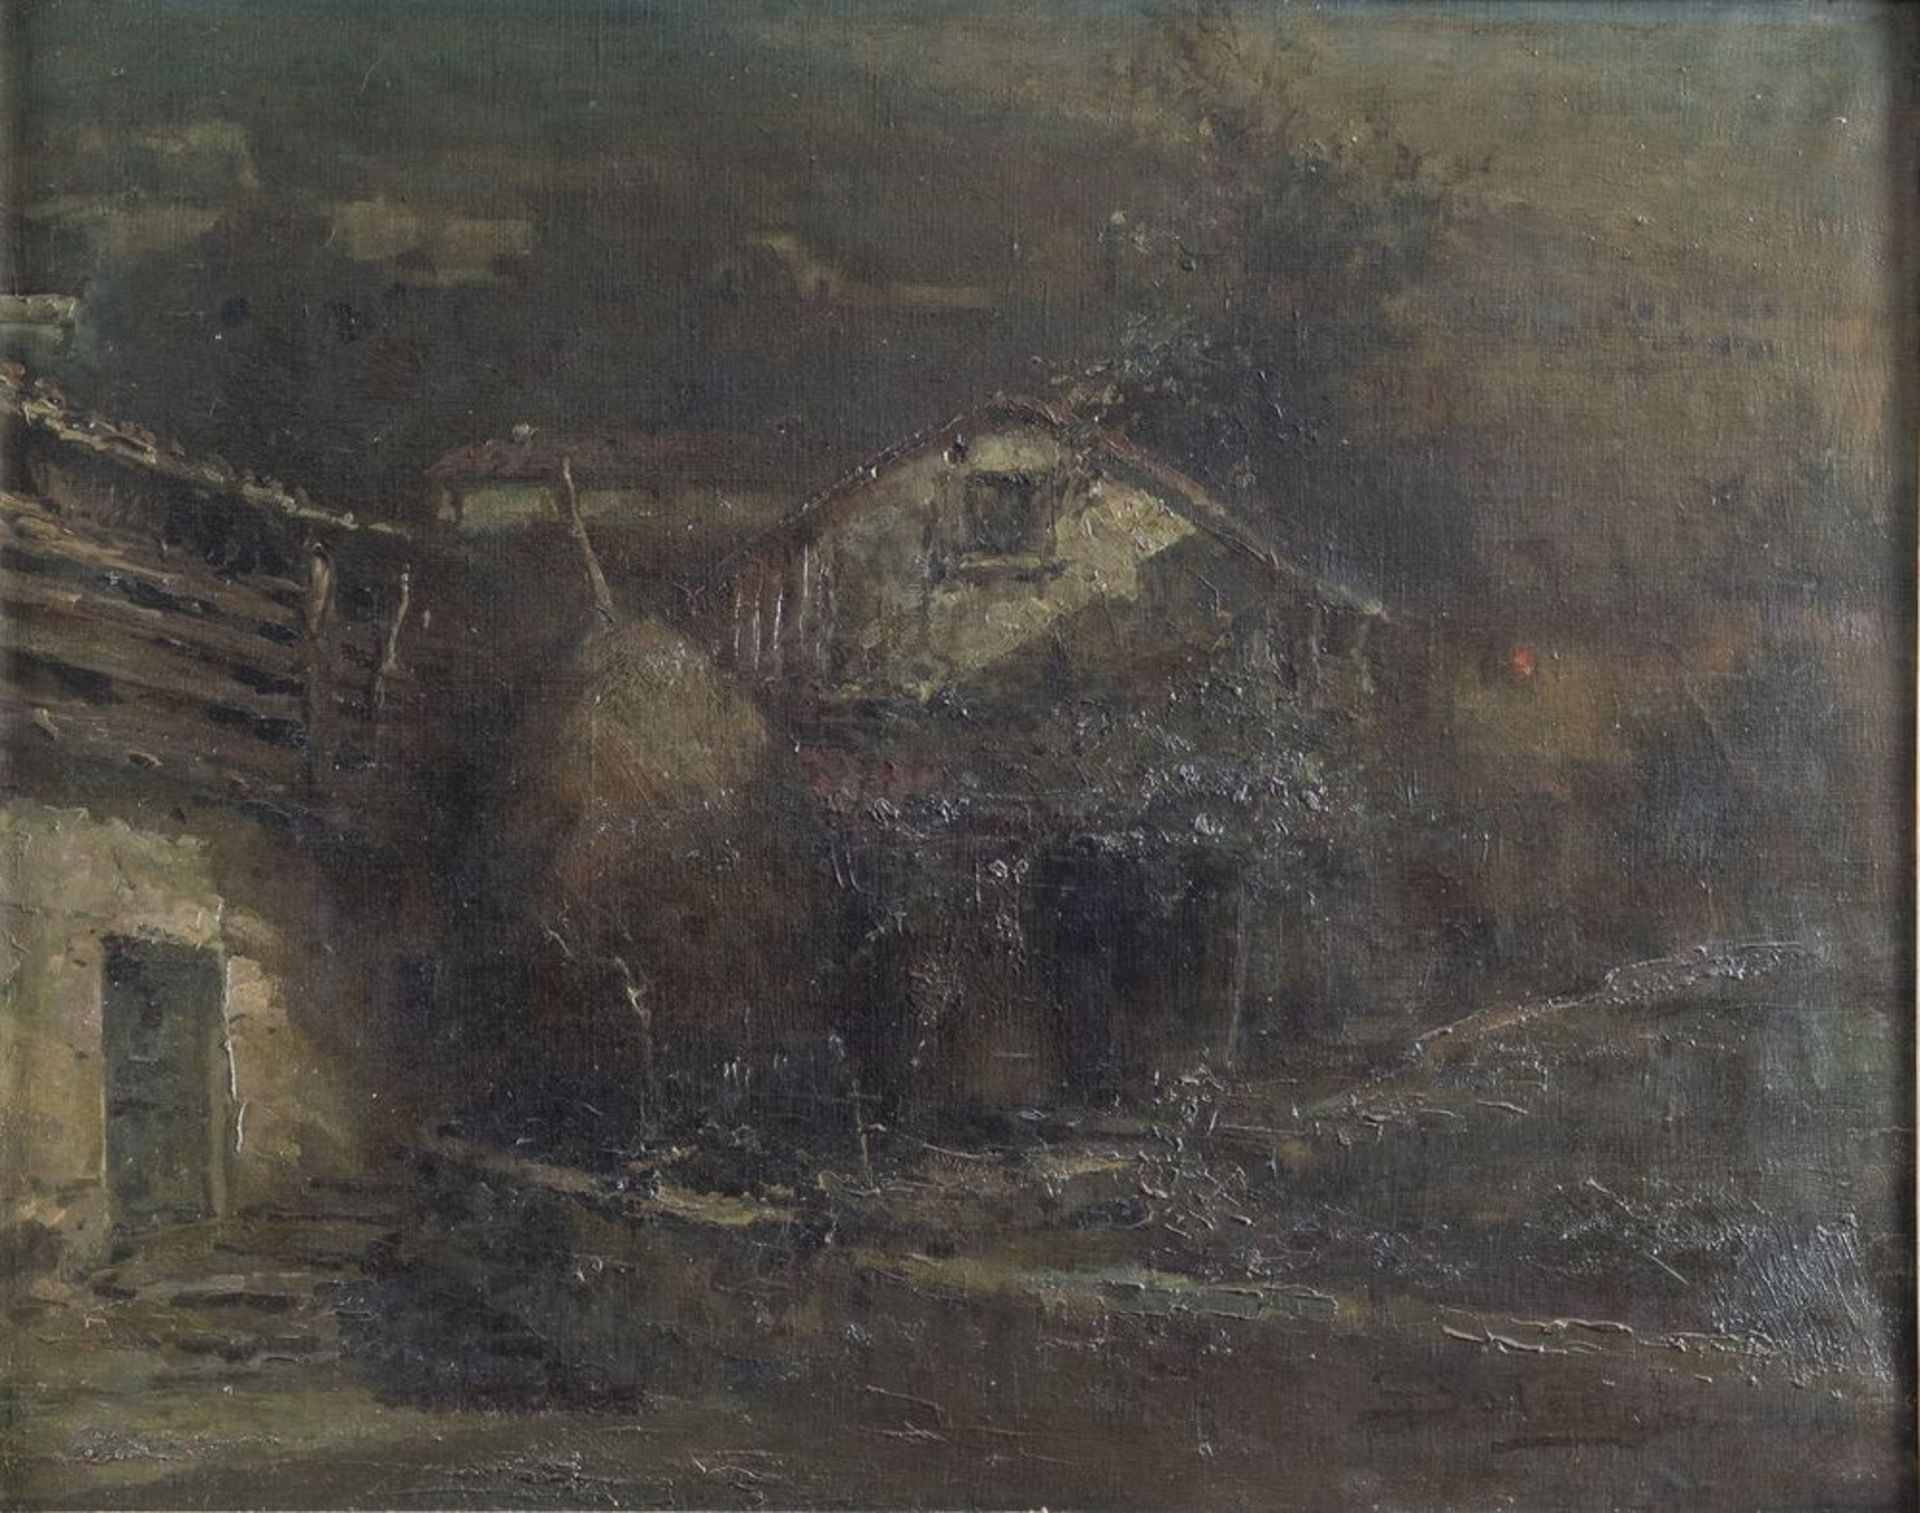 GIUSEPPE SOLENGHI (Milano 1879 - Cernobbio 1944) "Paesaggio con case", 1919. Olio su tela. Cm